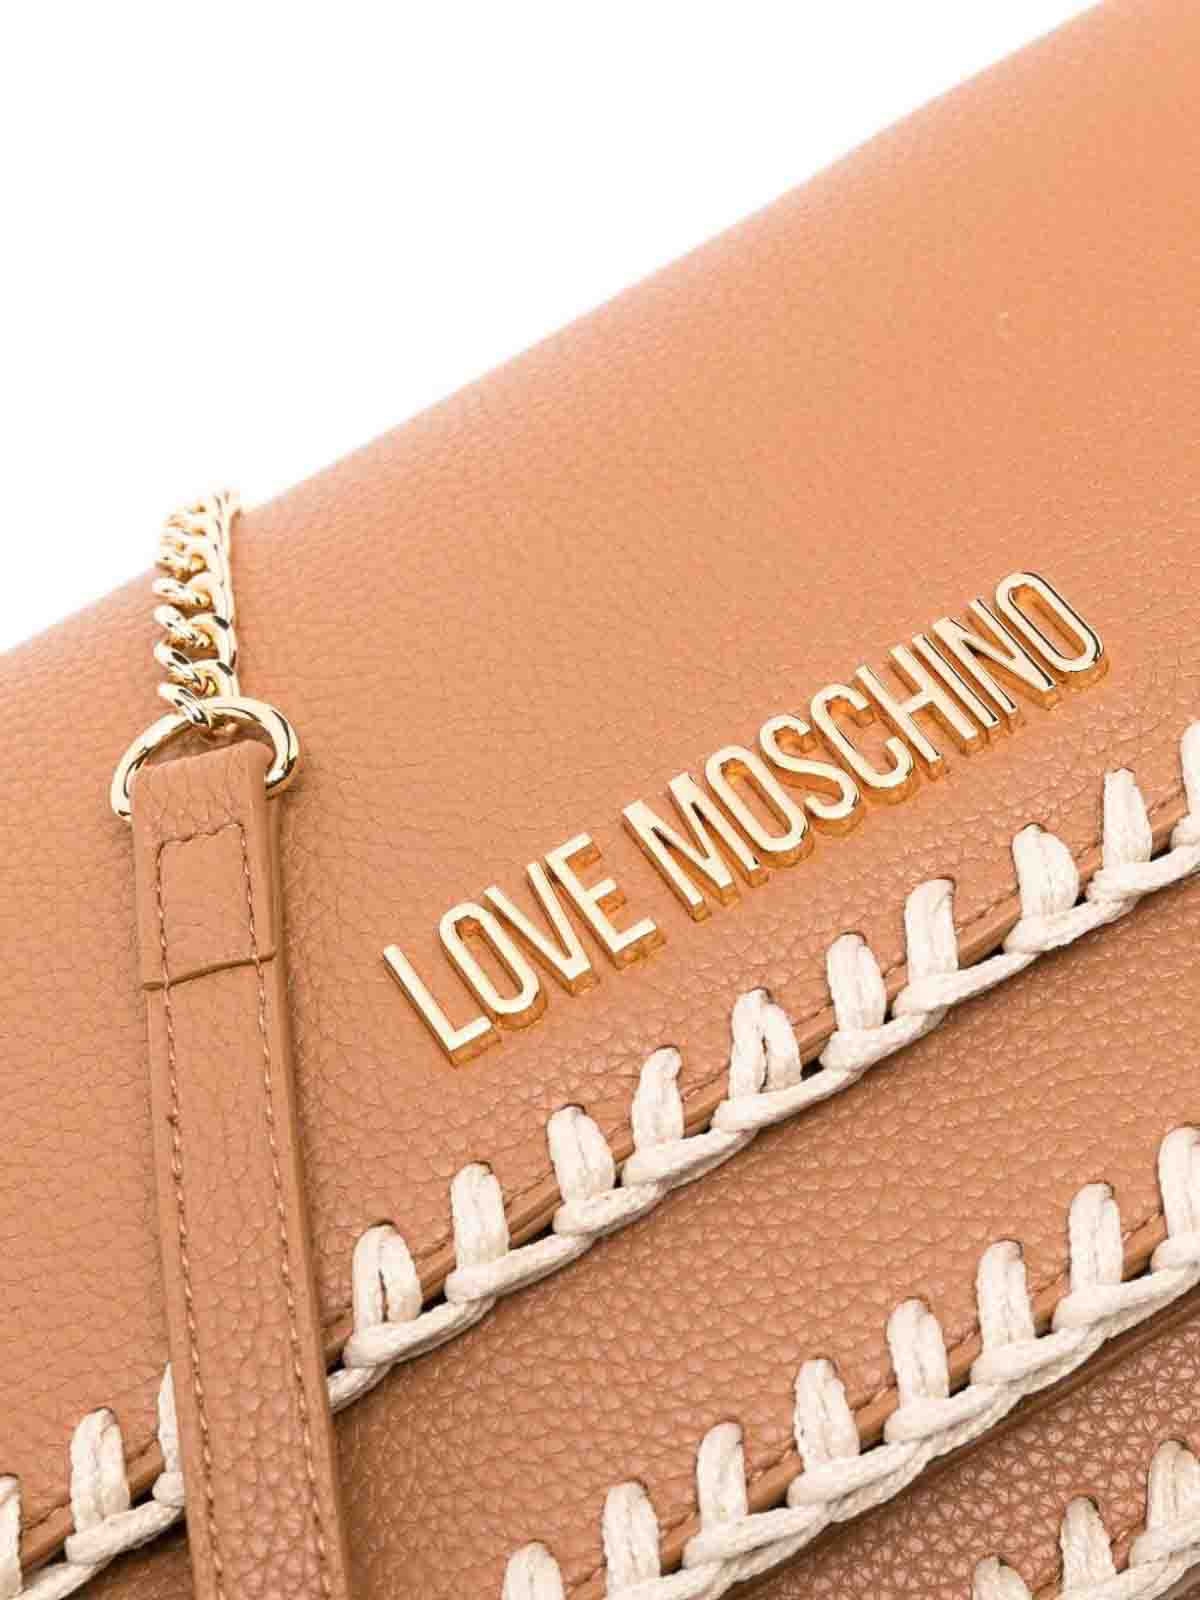 Shop Love Moschino Bolsa Bandolera - Marrón In Brown